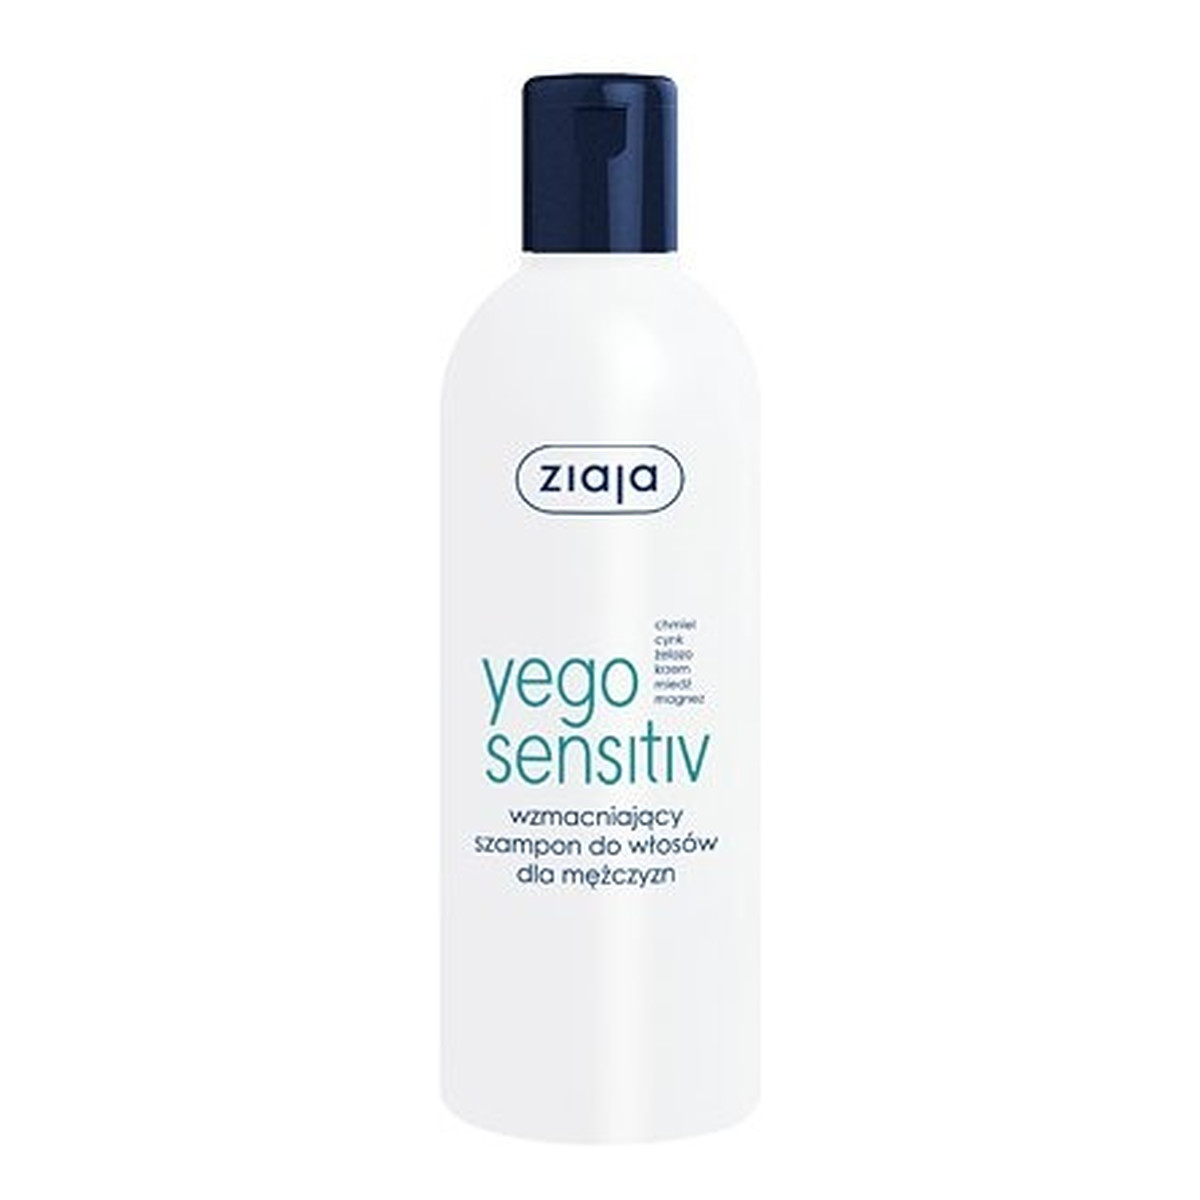 Ziaja Yego SENSITIV Wzmacniający szampon do włosów dla mężczyzn 300ml